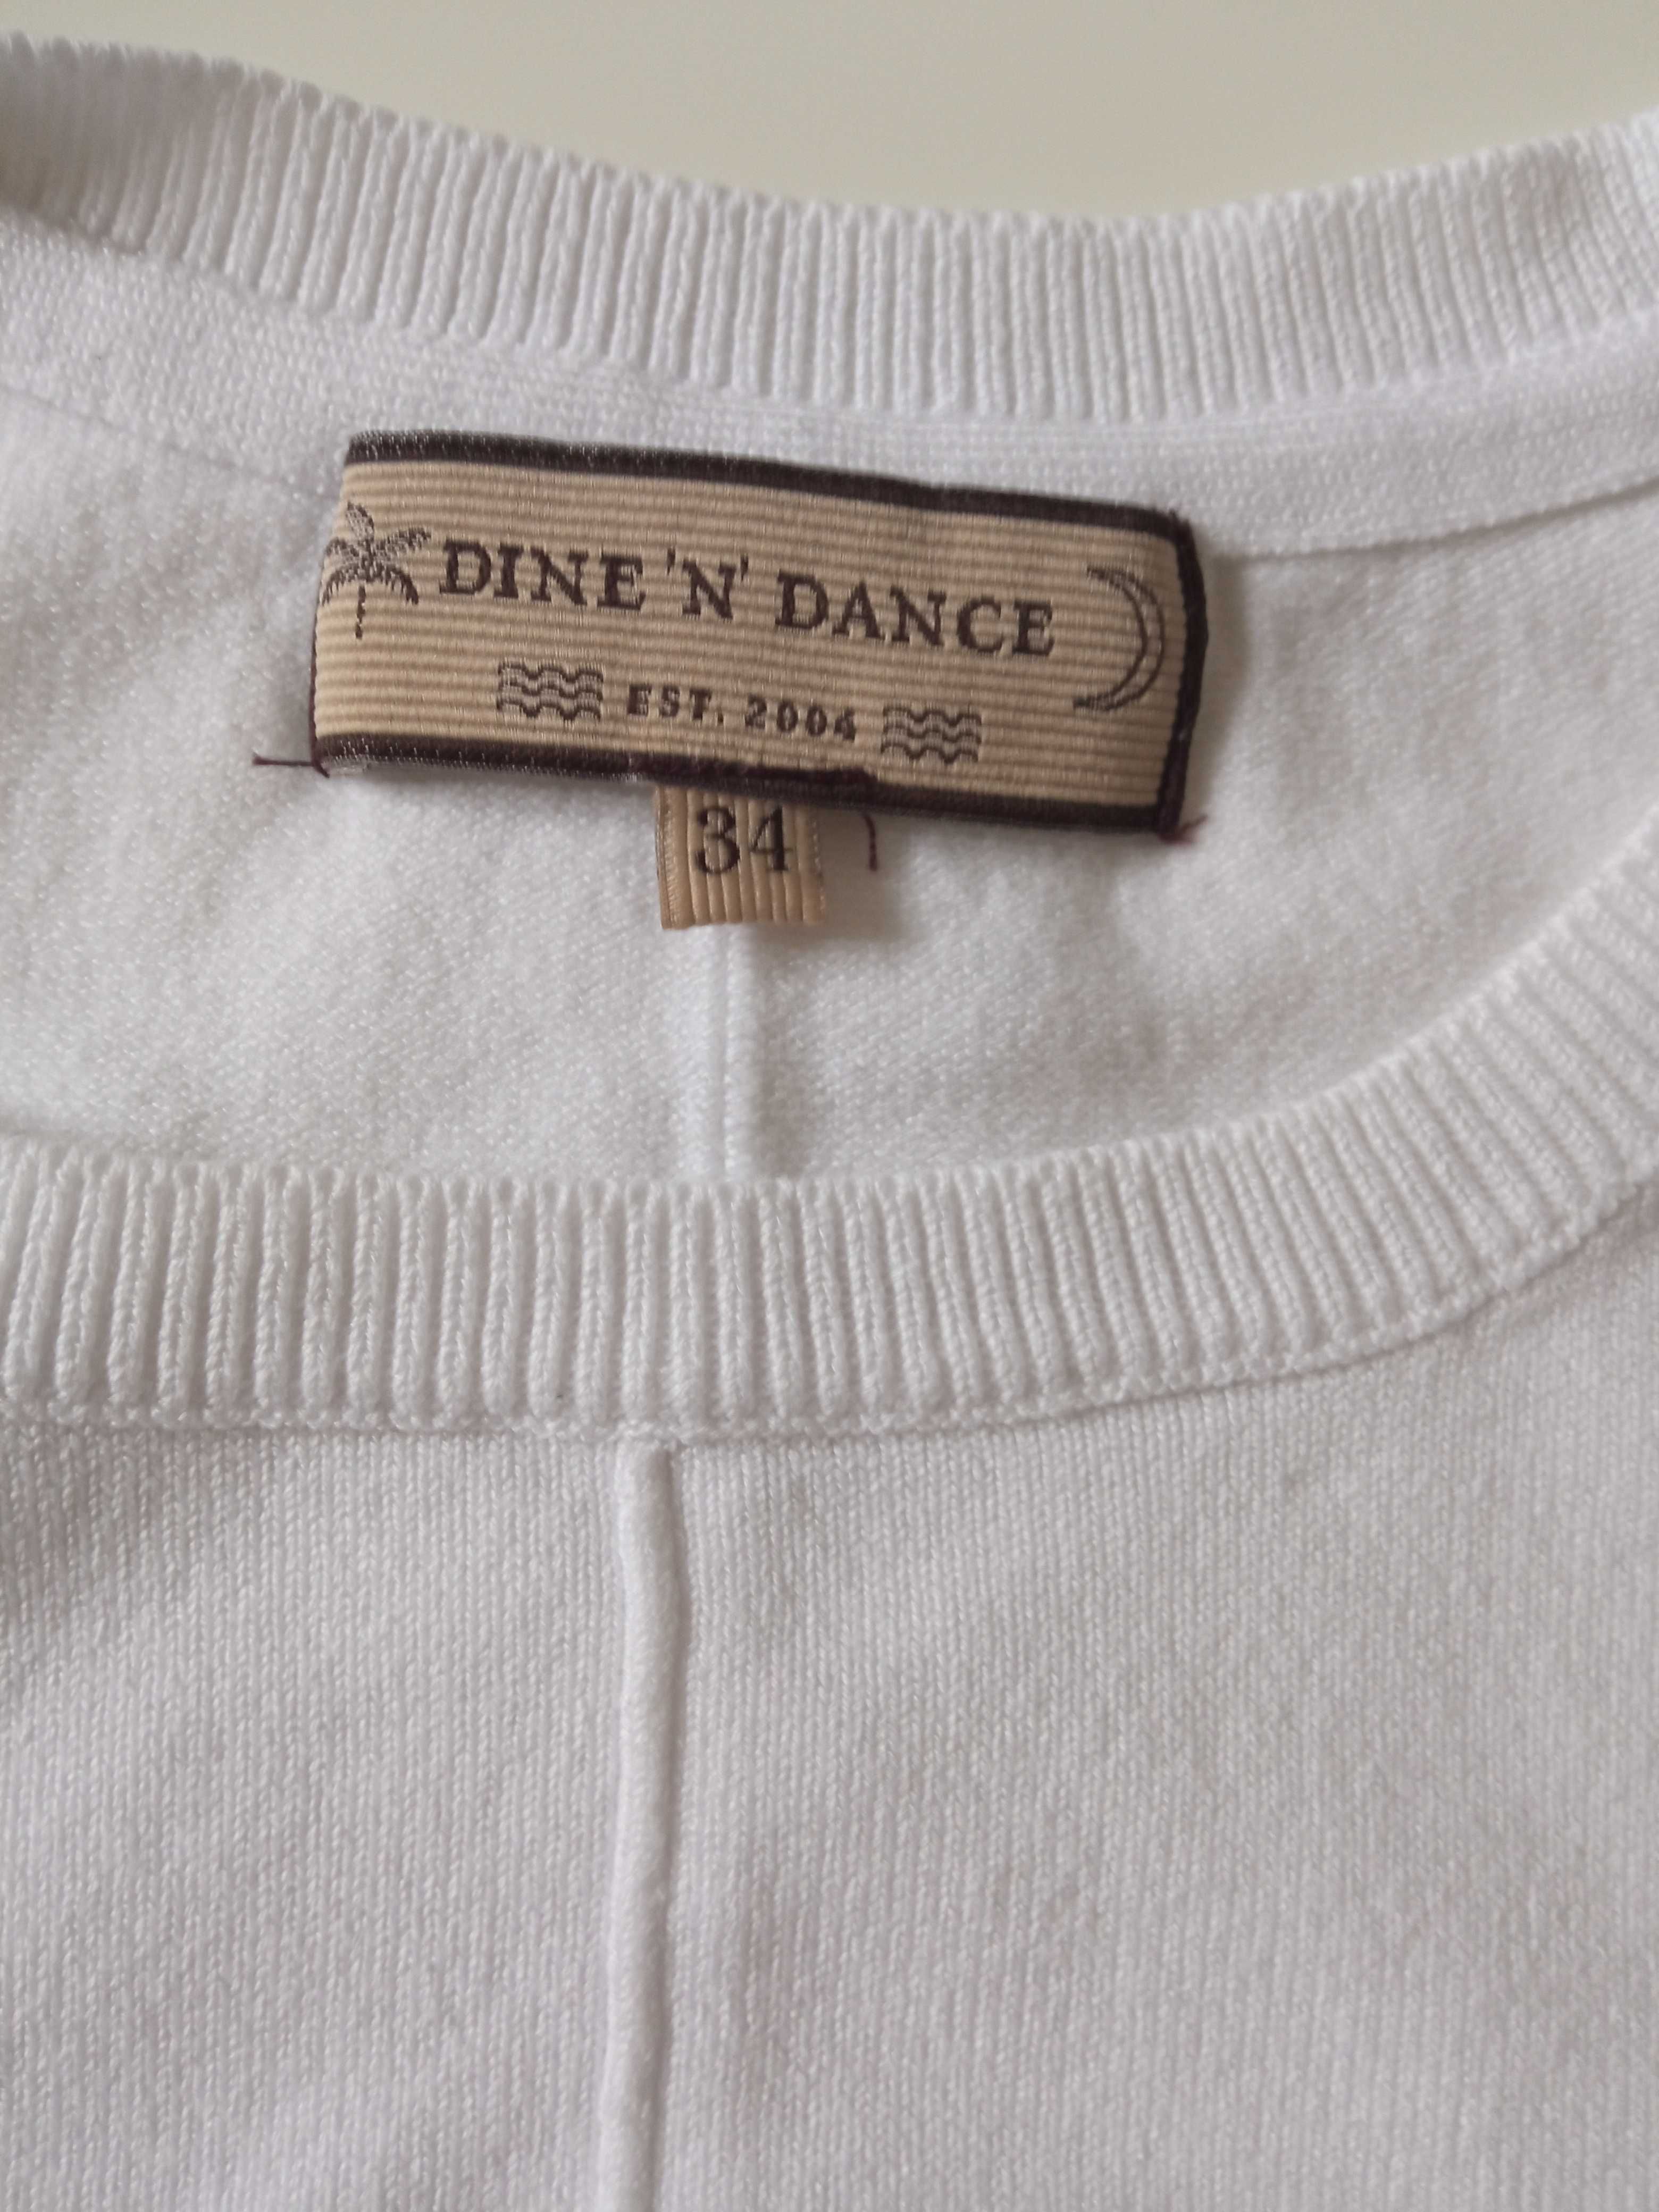 Dine 'N' Dance biały sweterek damski r 34 bdb